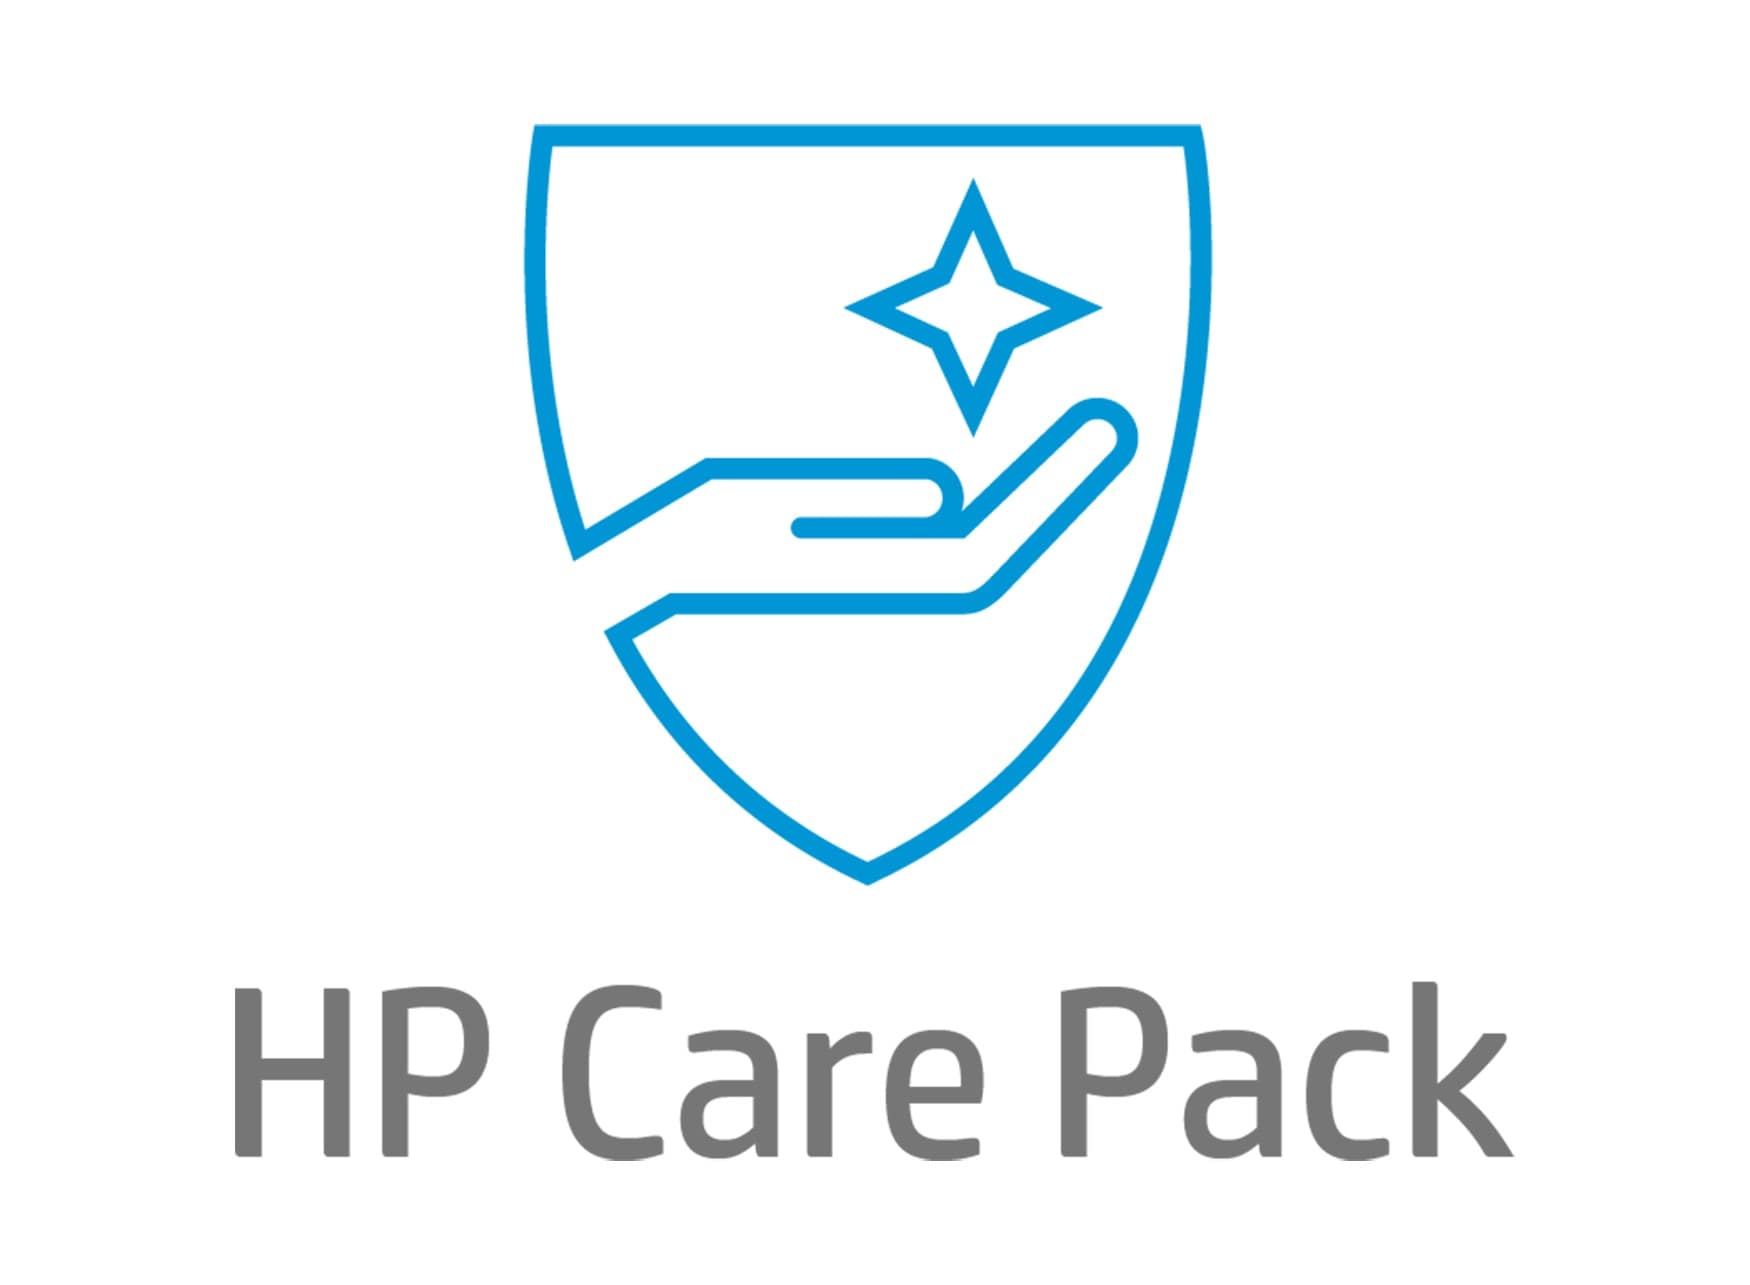 HP Post garantie d'1 an pour les PC Portables ENVY - Prise en charge et retour par transporteur - Réparation hors site sous 3 à 5 jours ouvrés